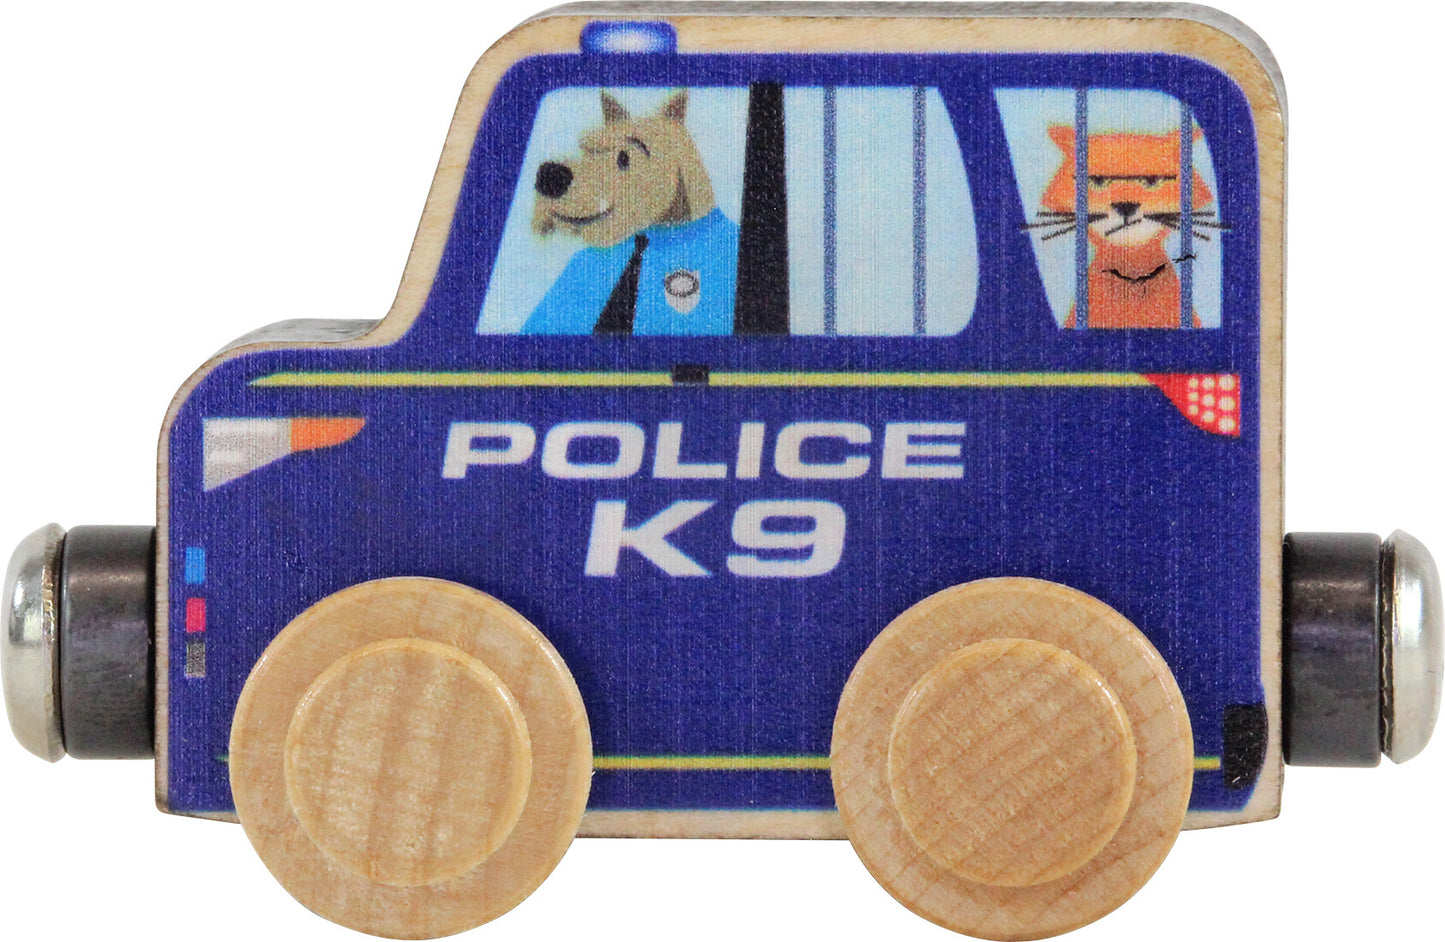 NameTrains Police Car